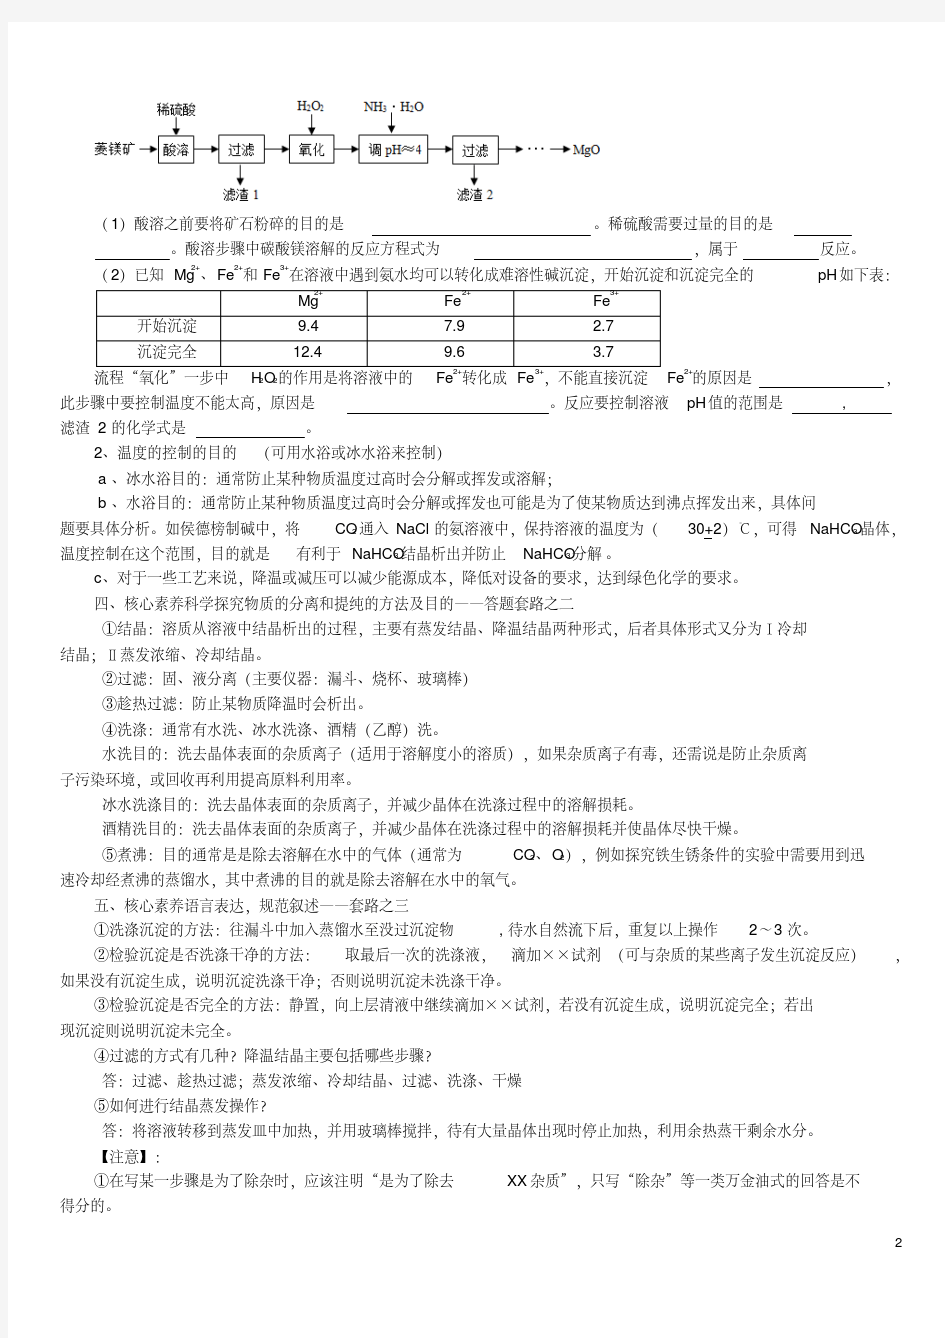 新版化工流程图解题技巧.pdf